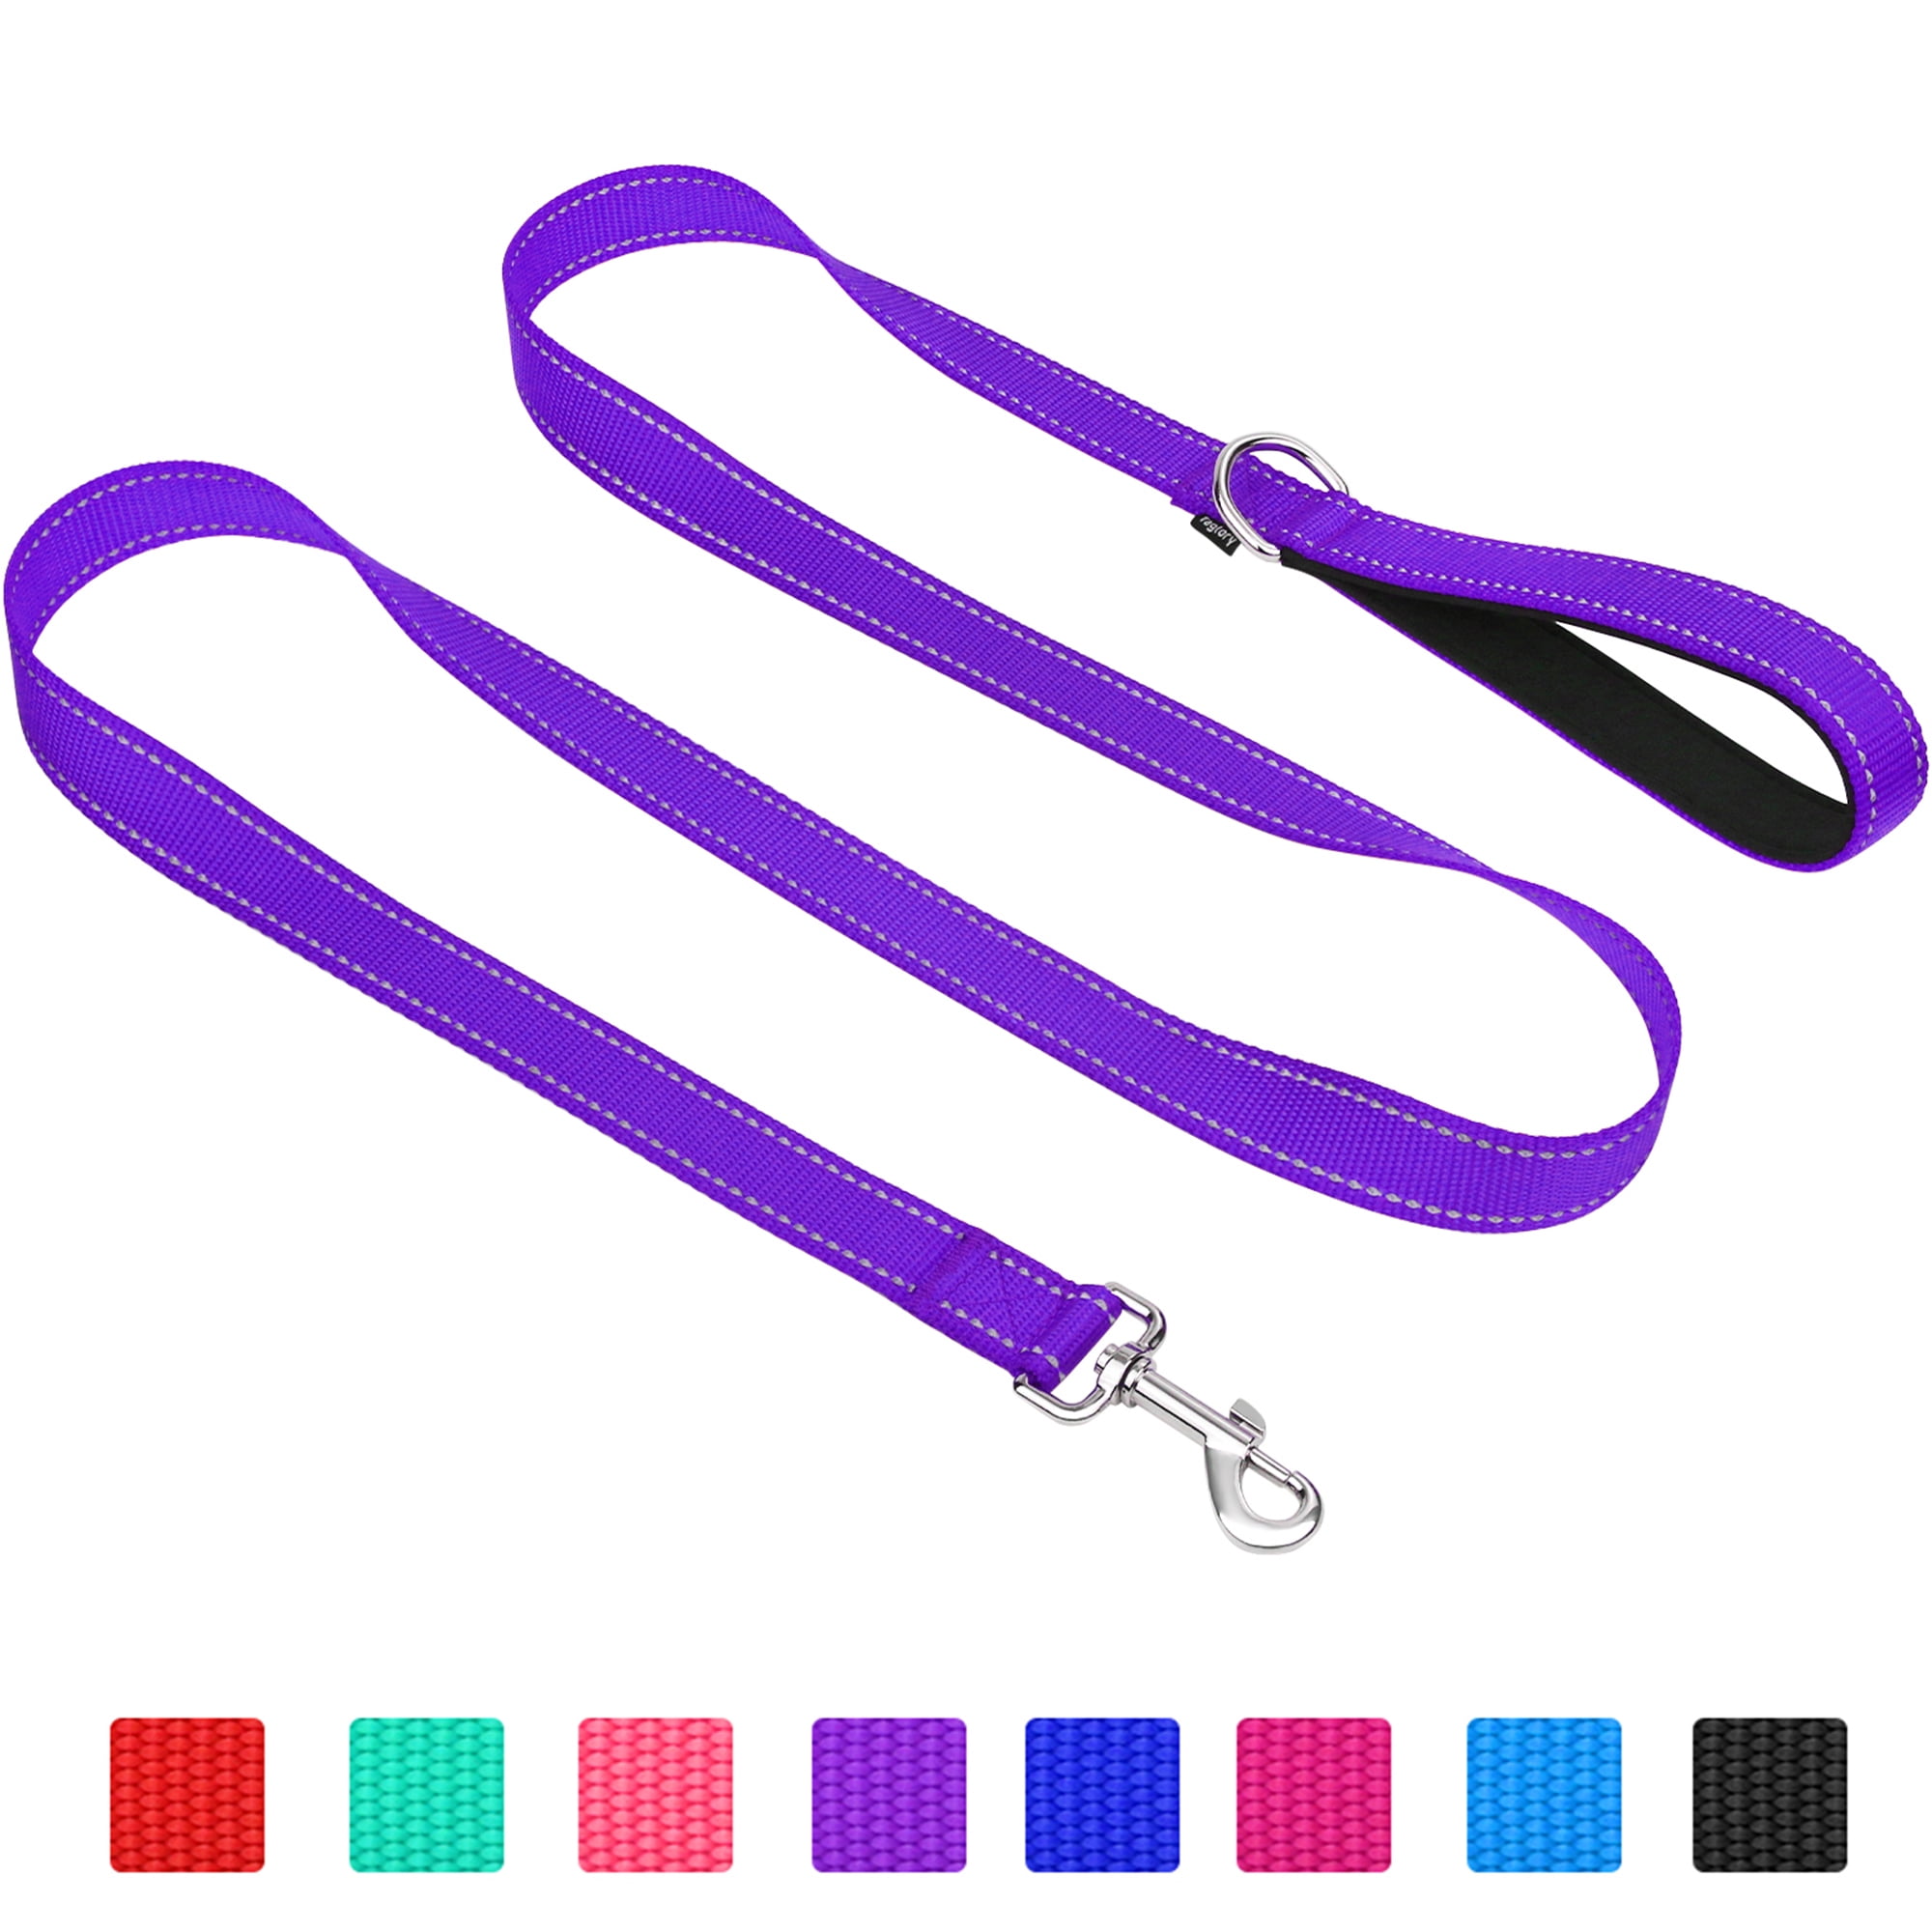 10pcs/lot 4ft Dog Leash Clip Nylon Rope Pet Walking Leads Black Red Blue  Purple